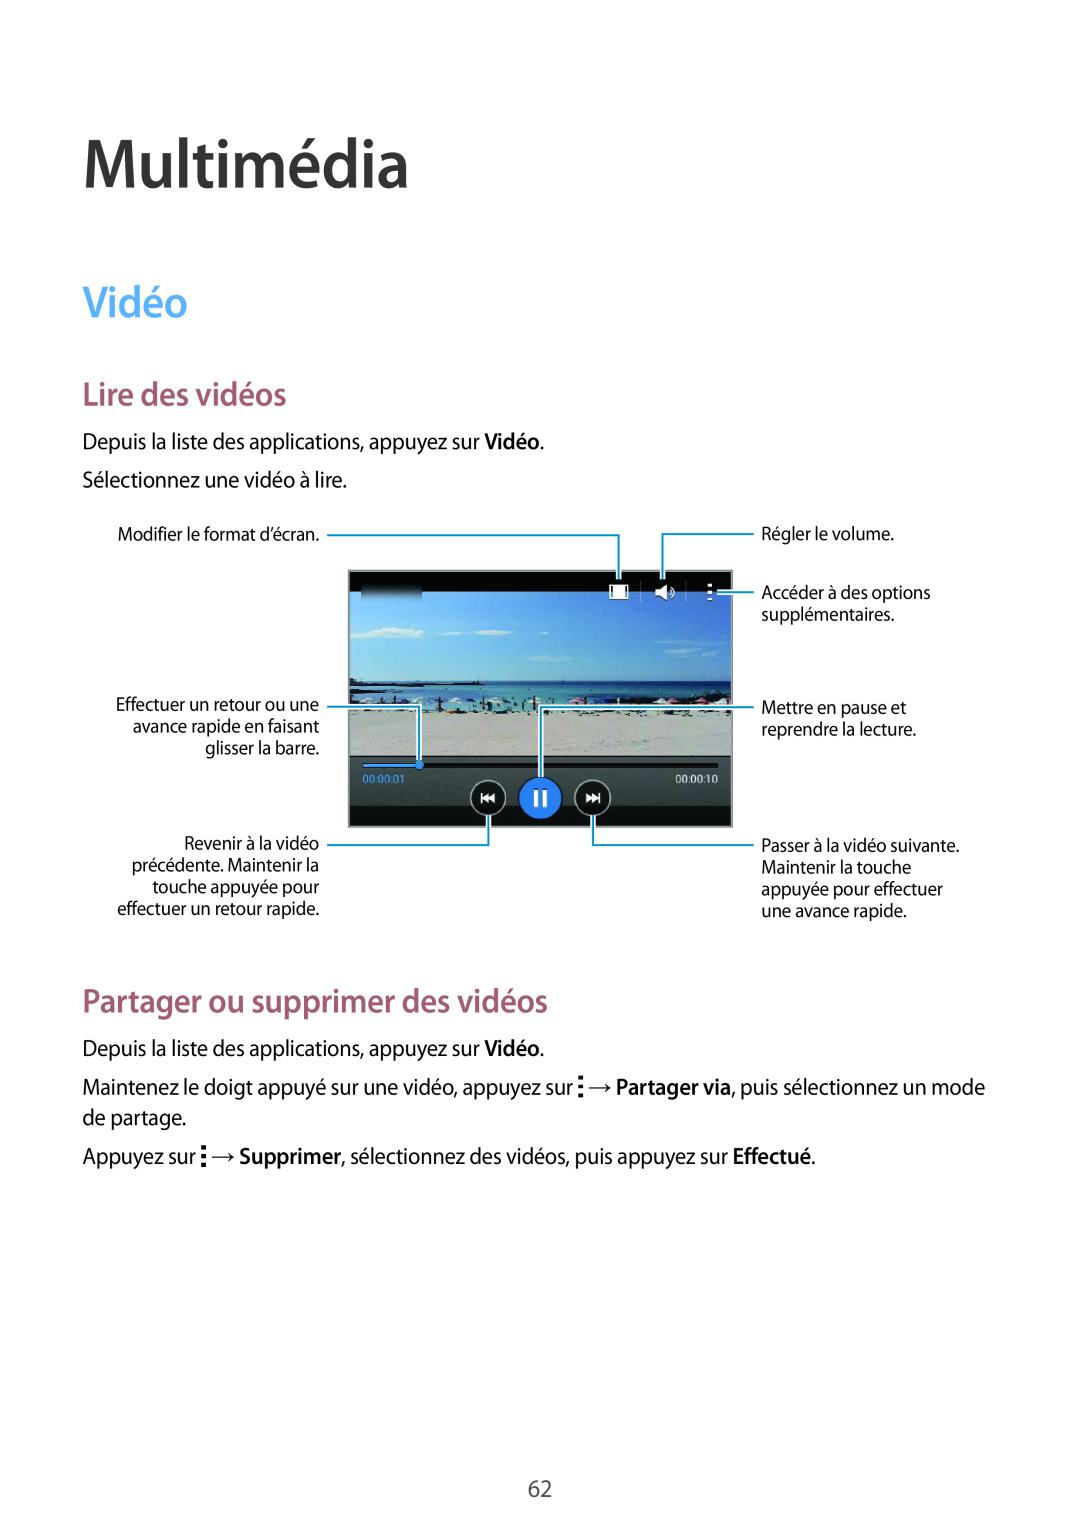 Samsung SM-G130HZWACOR, SM-G130HZANFTM, SM-G130HZWNXEF Multimédia, Vidéo, Lire des vidéos, Partager ou supprimer des vidéos 